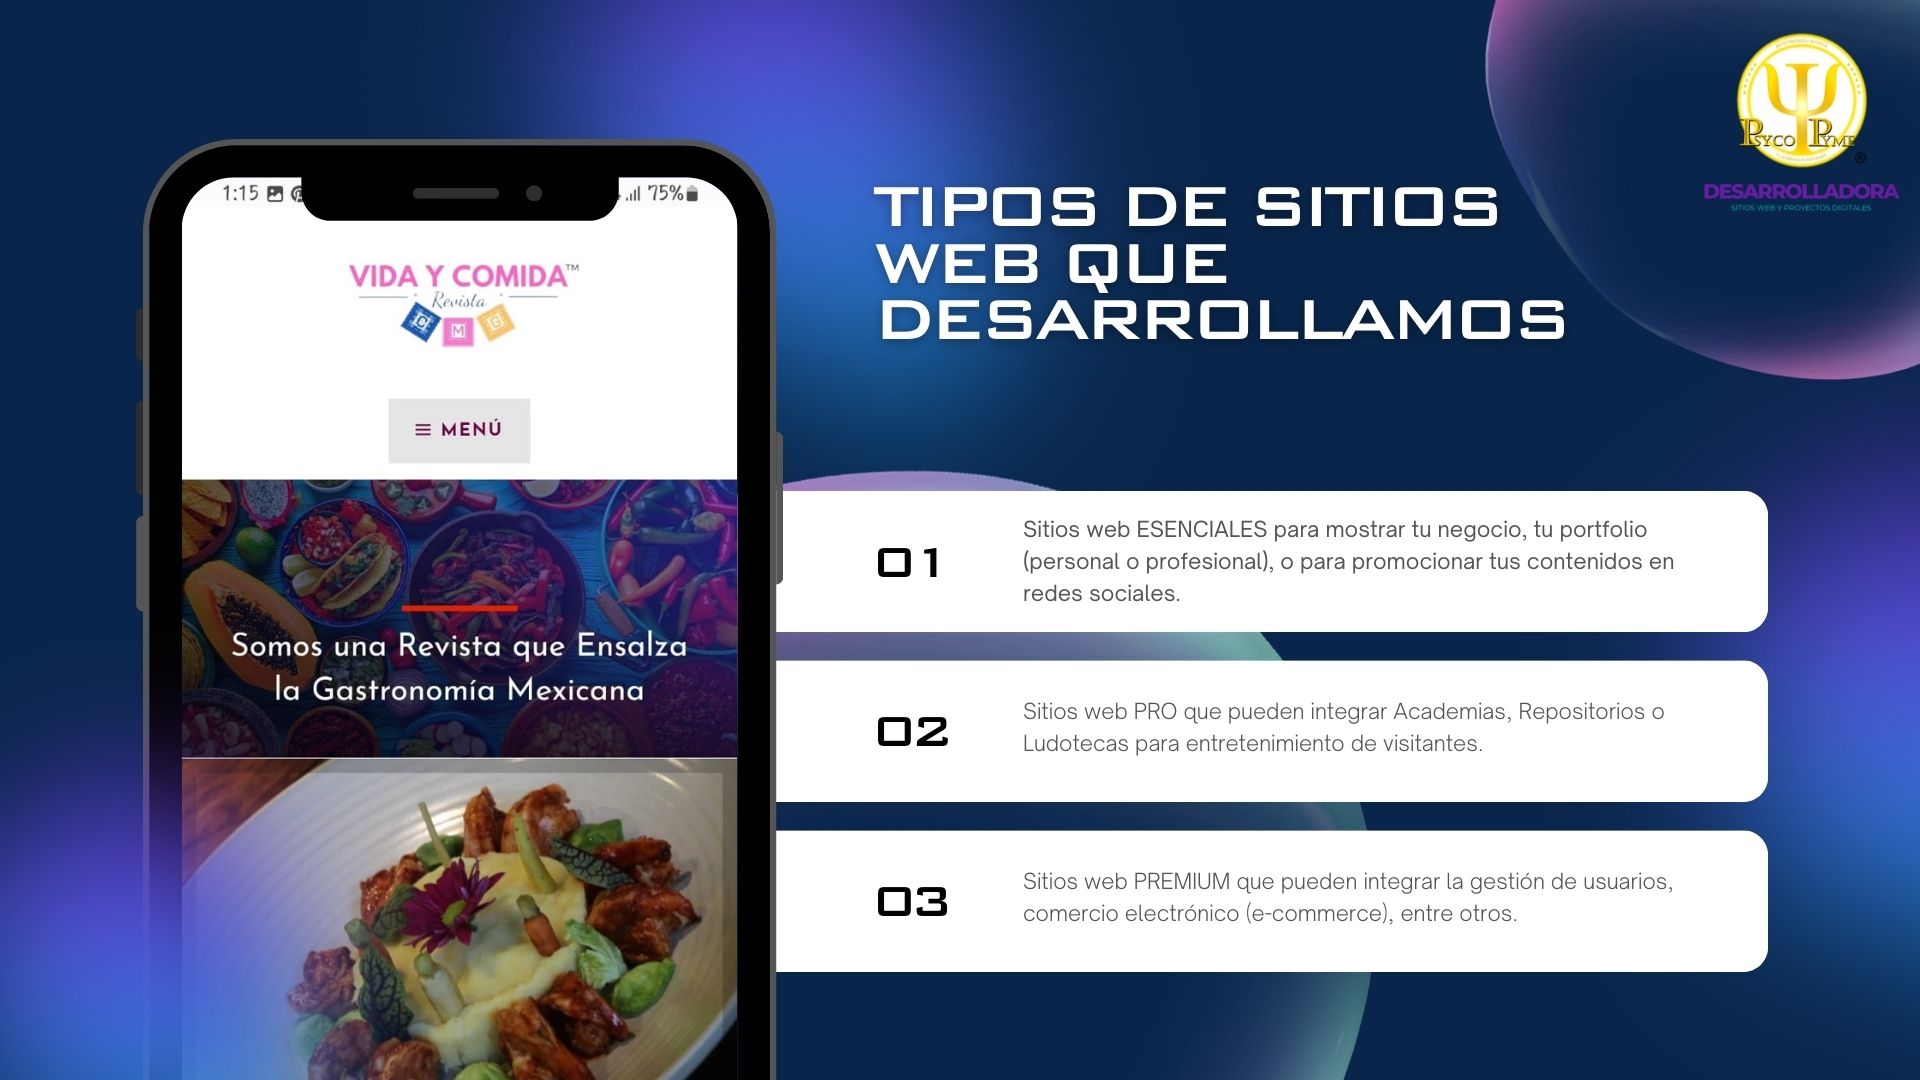 TIPOS DE SITIOS
WEB QUE
DESARROLLAMOS

   
  

Somos una Revista que Ensalza

la Gastronomia Mexicana